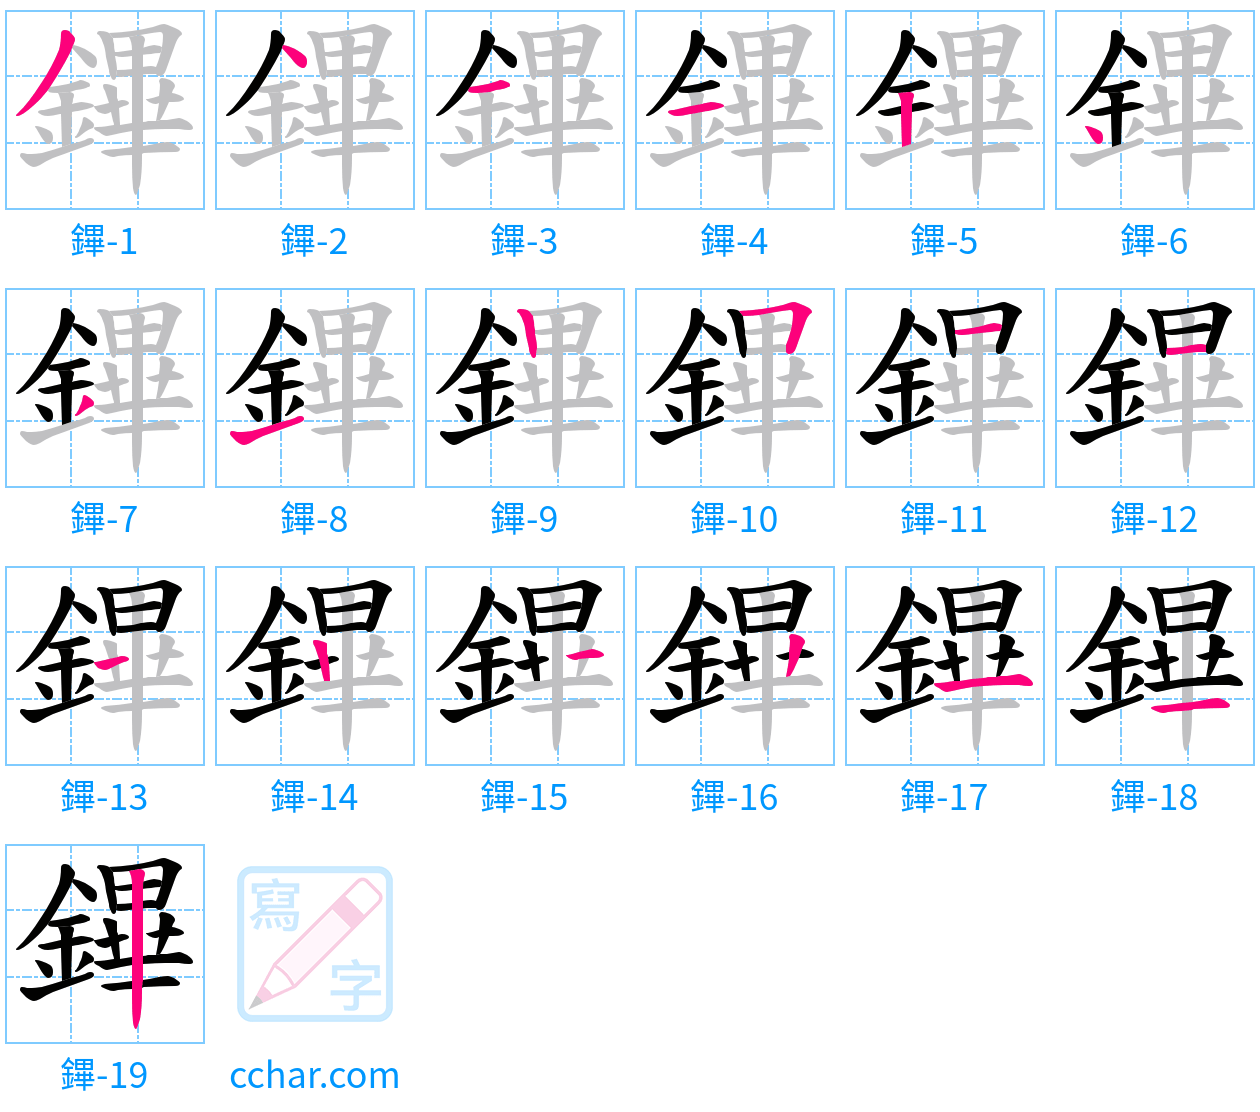 鏎 stroke order step-by-step diagram